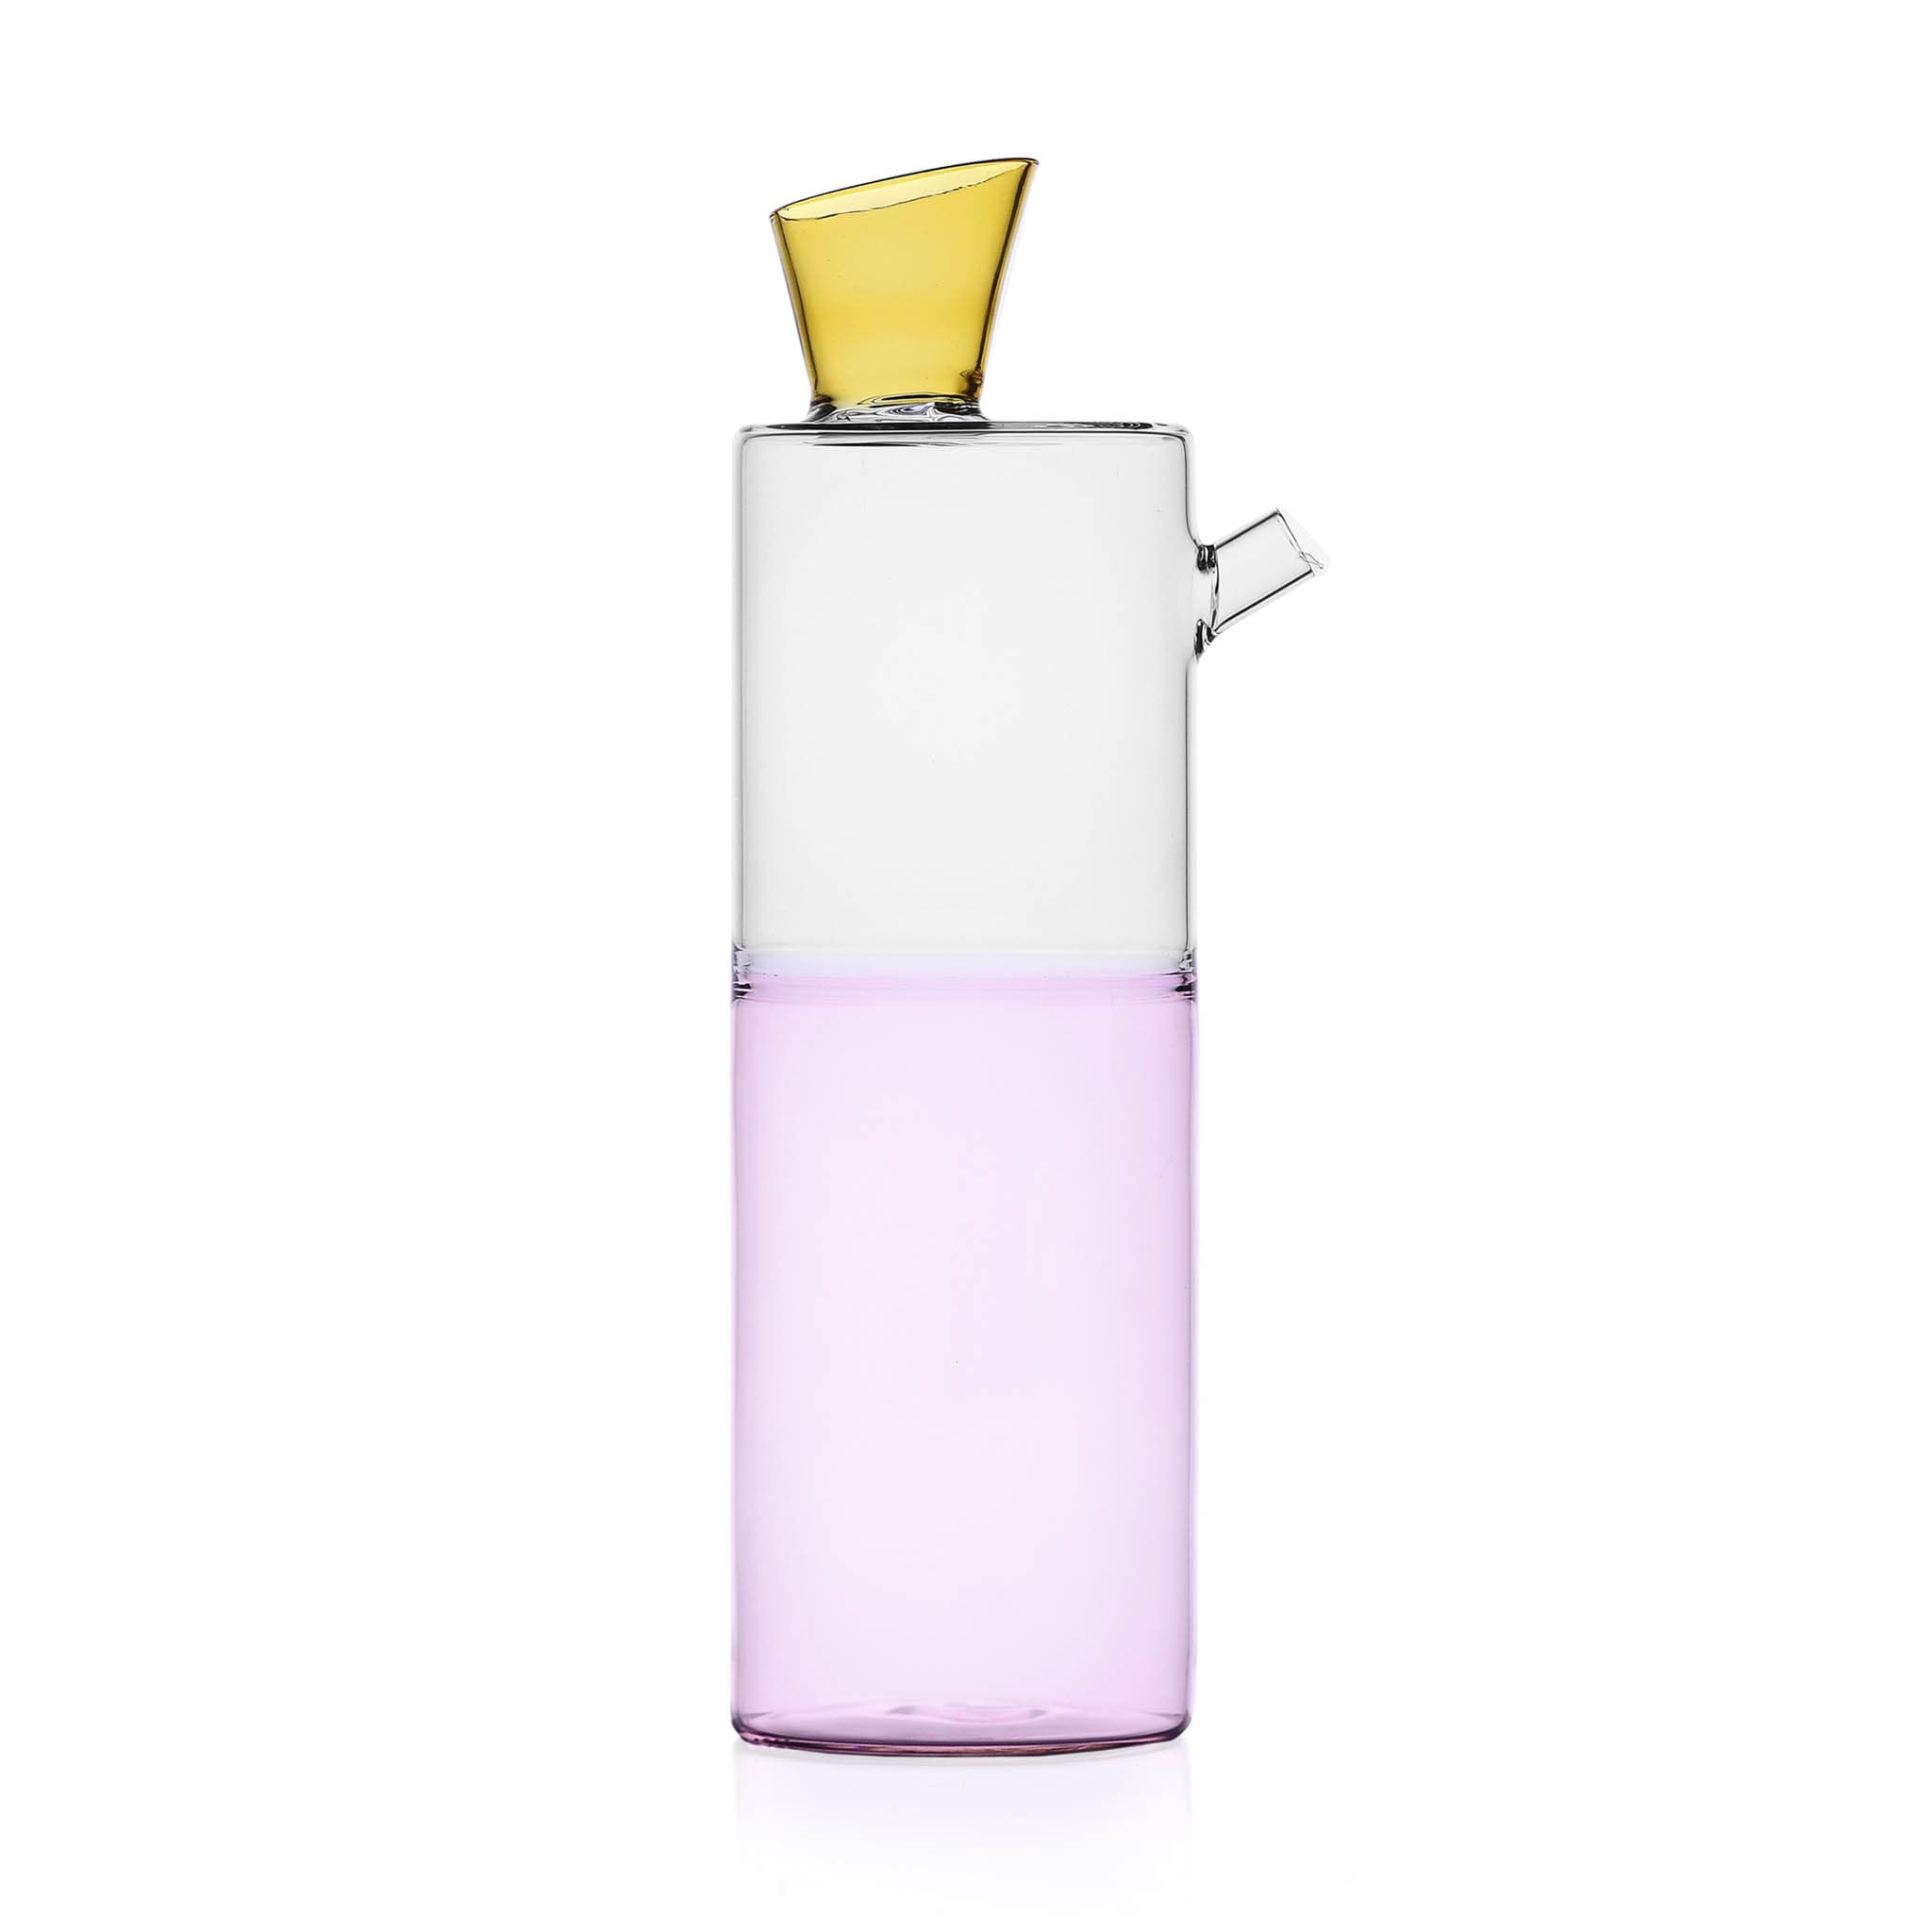 Ichendorf Milano Pink & Amber Bottle, 1 Litre